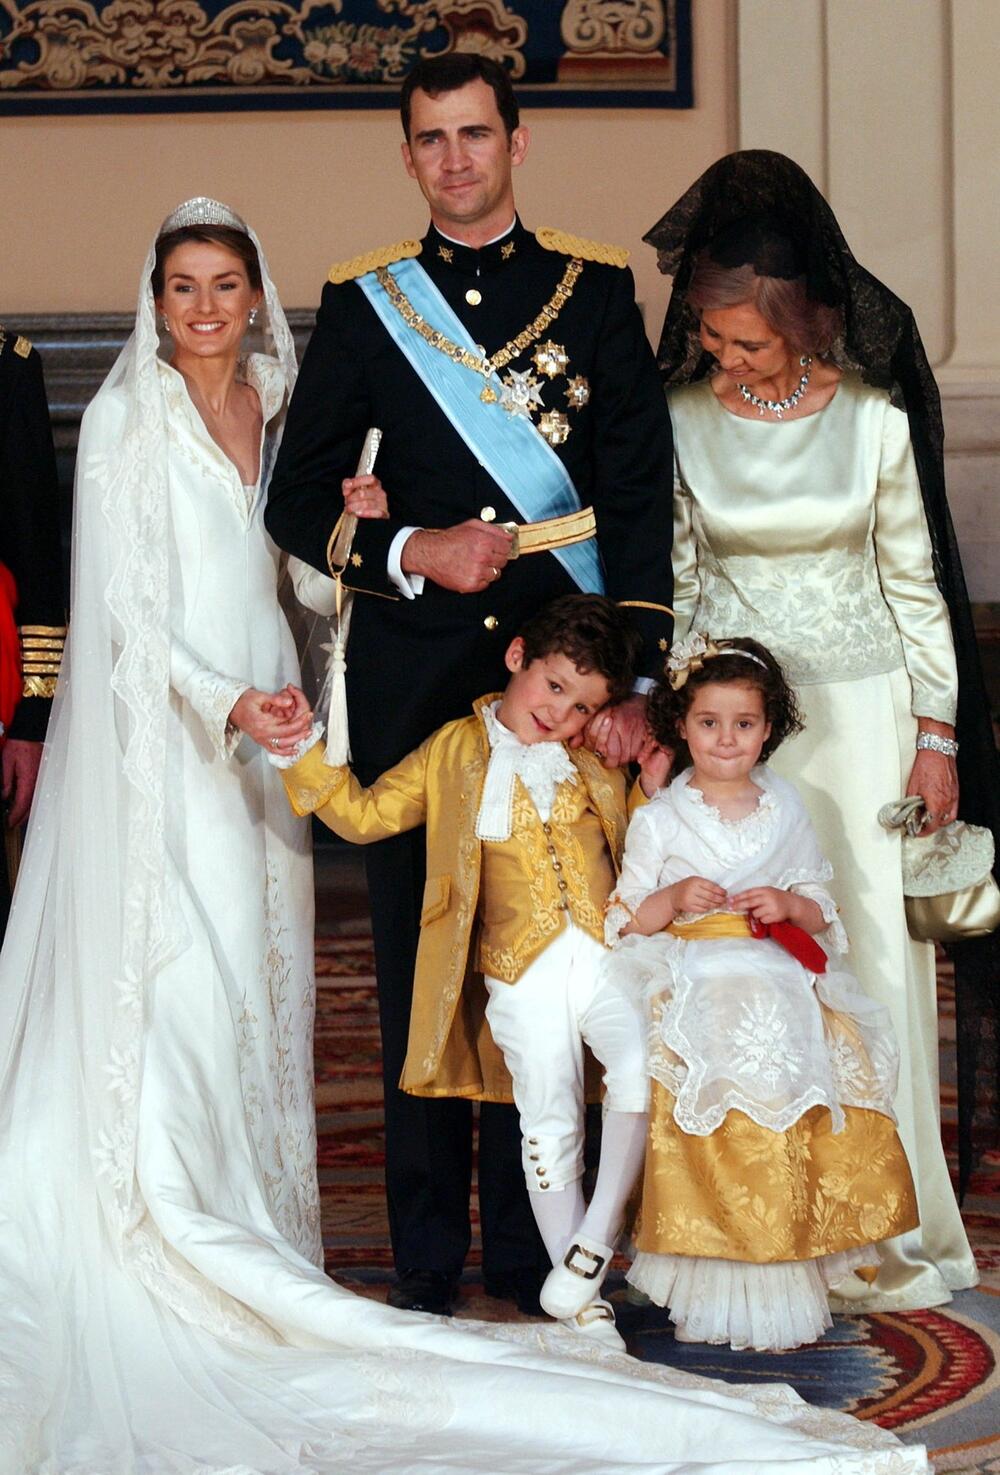 Kraljica Leticija i kralj Felipe - slika sa venčanja